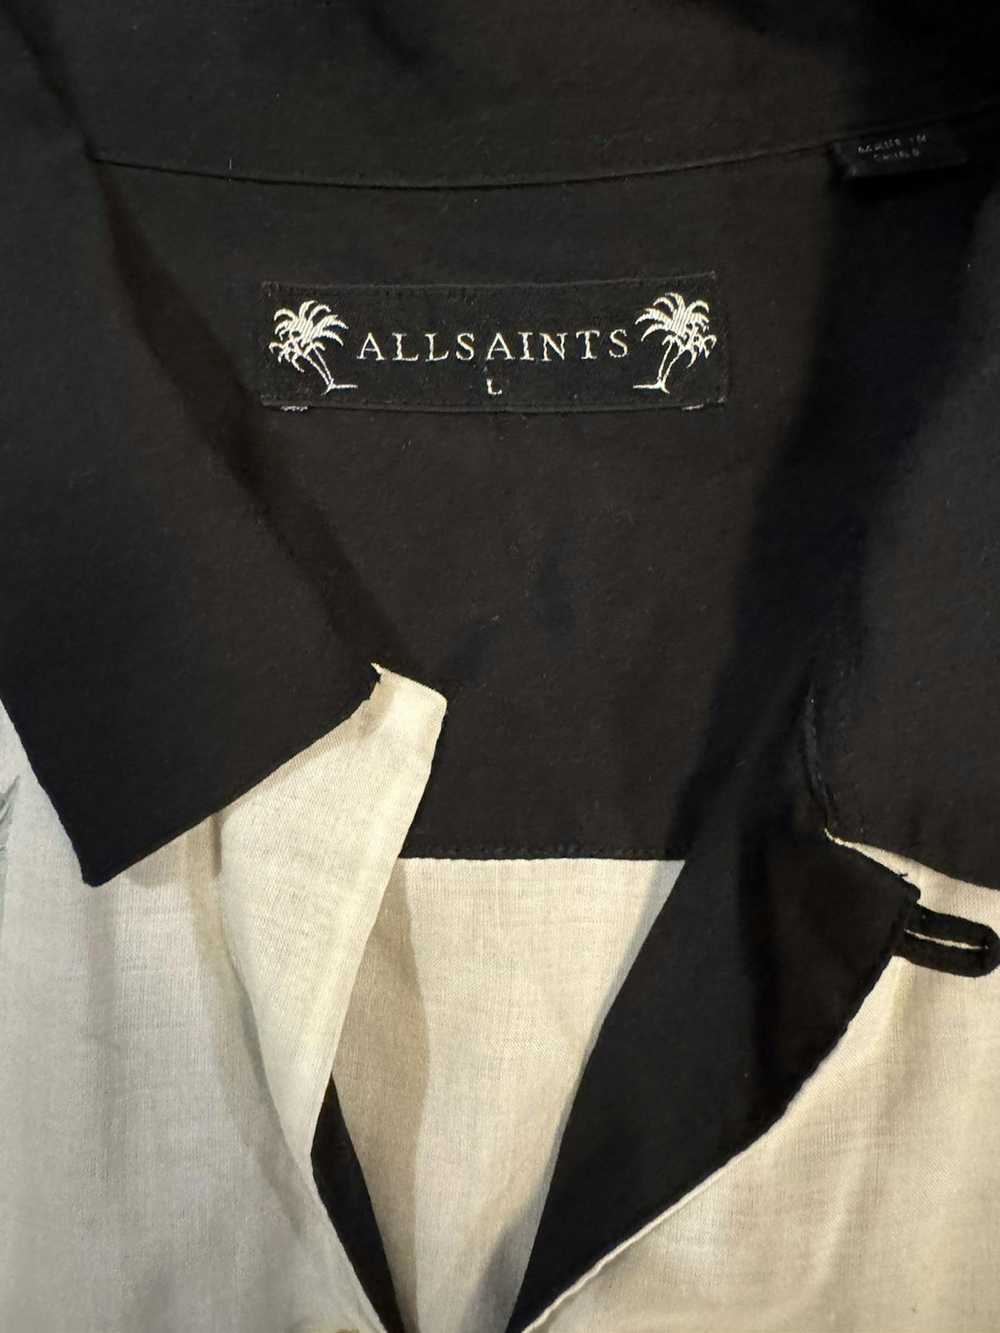 Allsaints Allsaints ‘Trellis’ Tropical Shirt - image 2